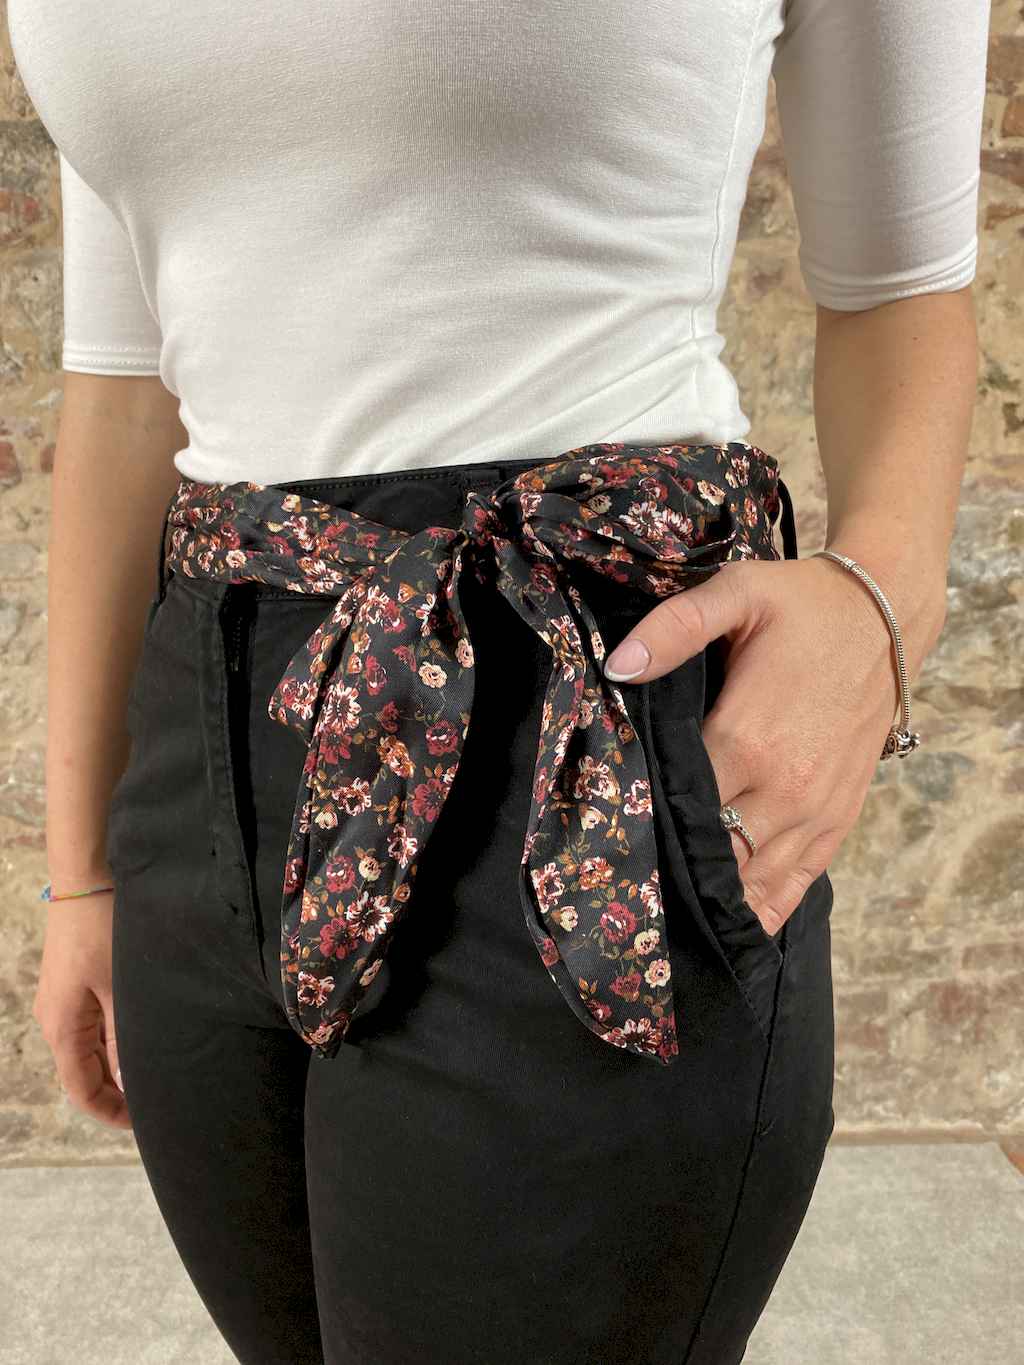 Pantalone elasticizzato con cintura in vita. Chiusura un bottone e zip. Due tasche anteriori con rouches. Due finte tasche posteriori.   Composizione: 95% cotone, 5% elastane.